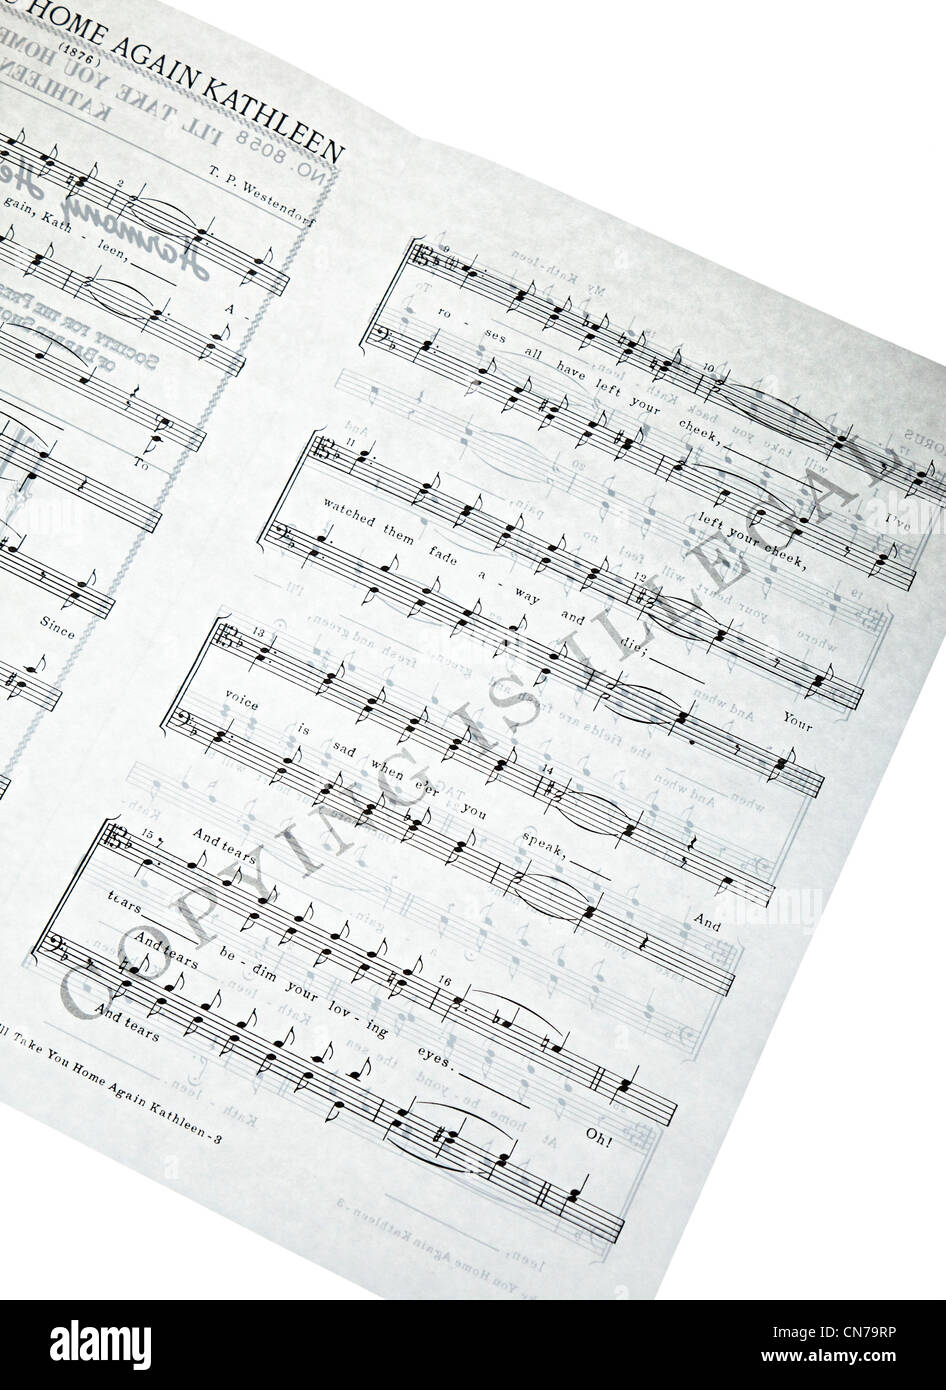 Sheet Music überdruckt mit Kopieren ist Illegal Stockfoto